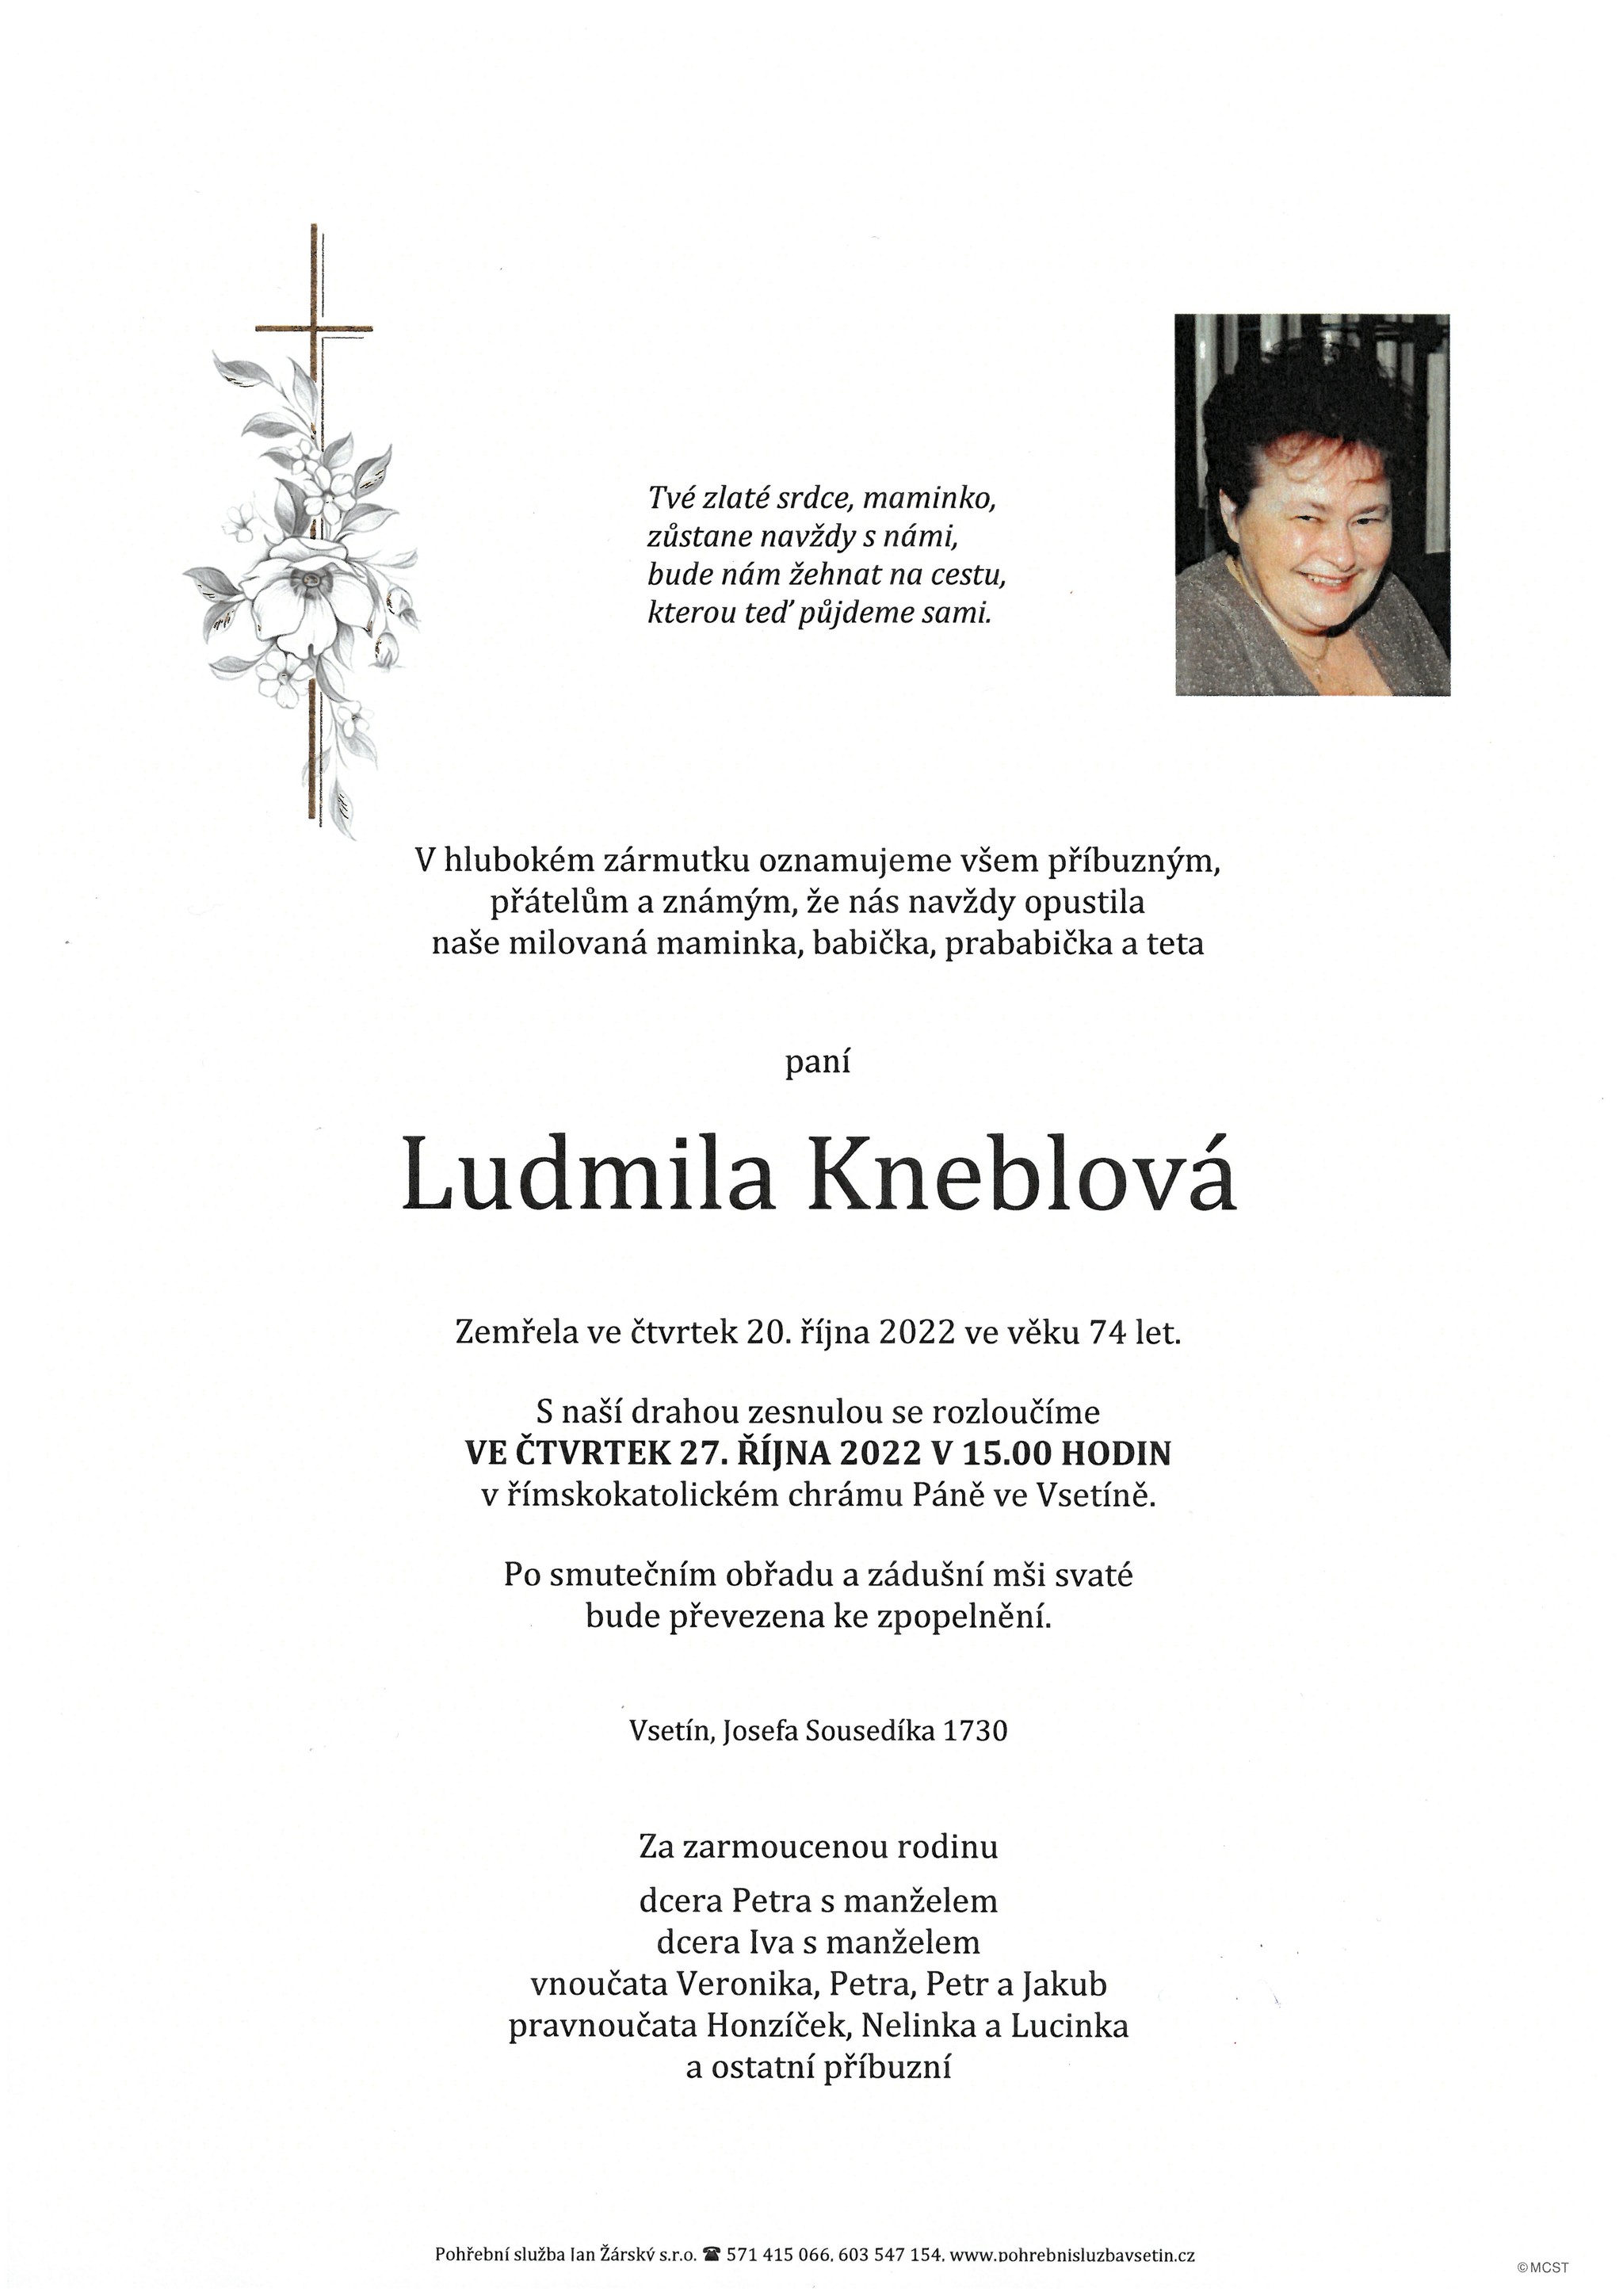 Ludmila Kneblová